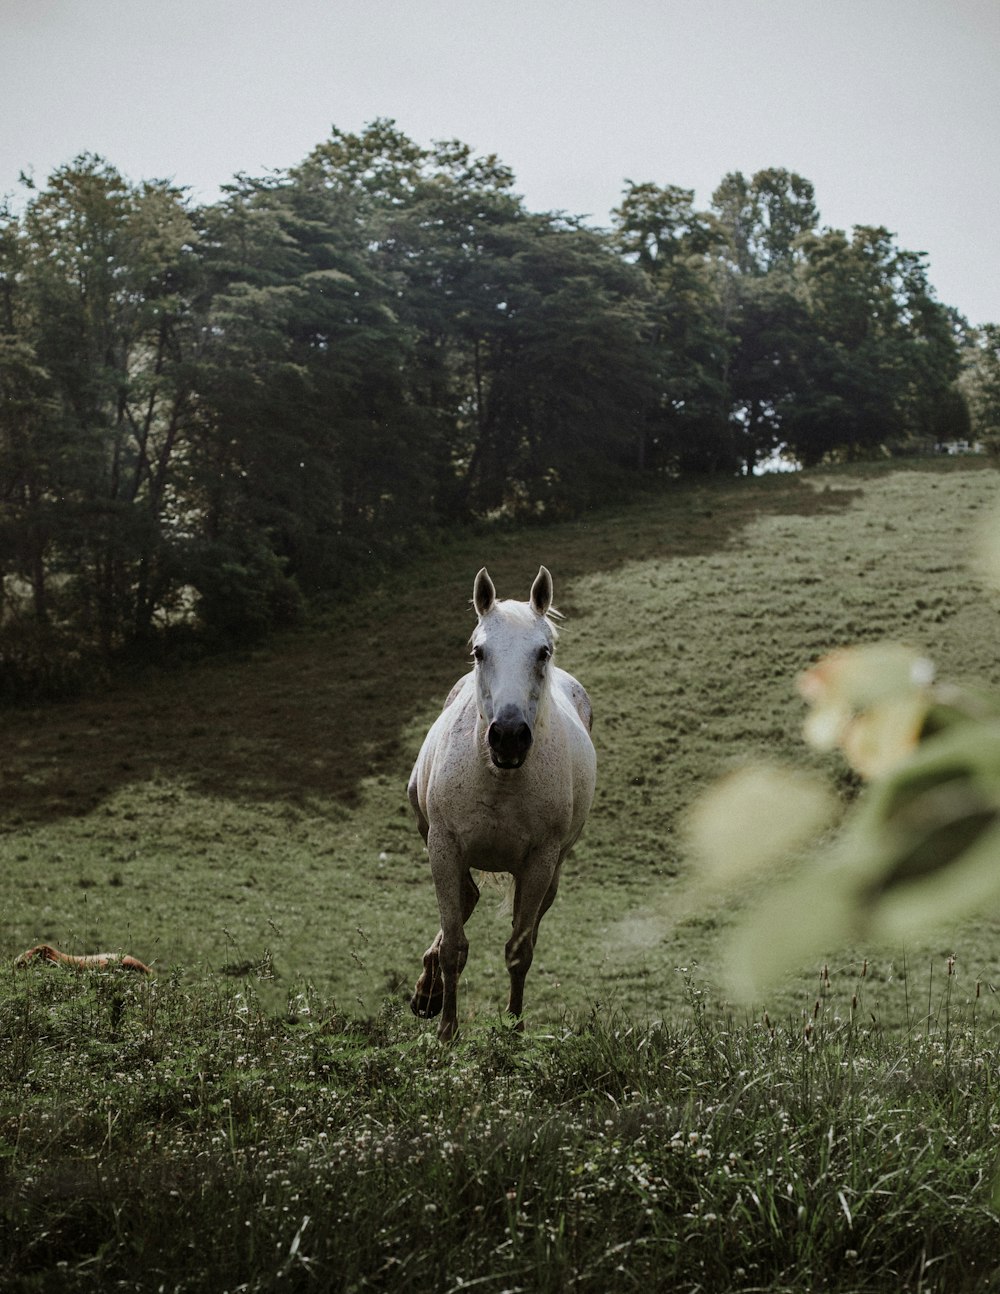 Un caballo blanco corriendo en un campo cubierto de hierba